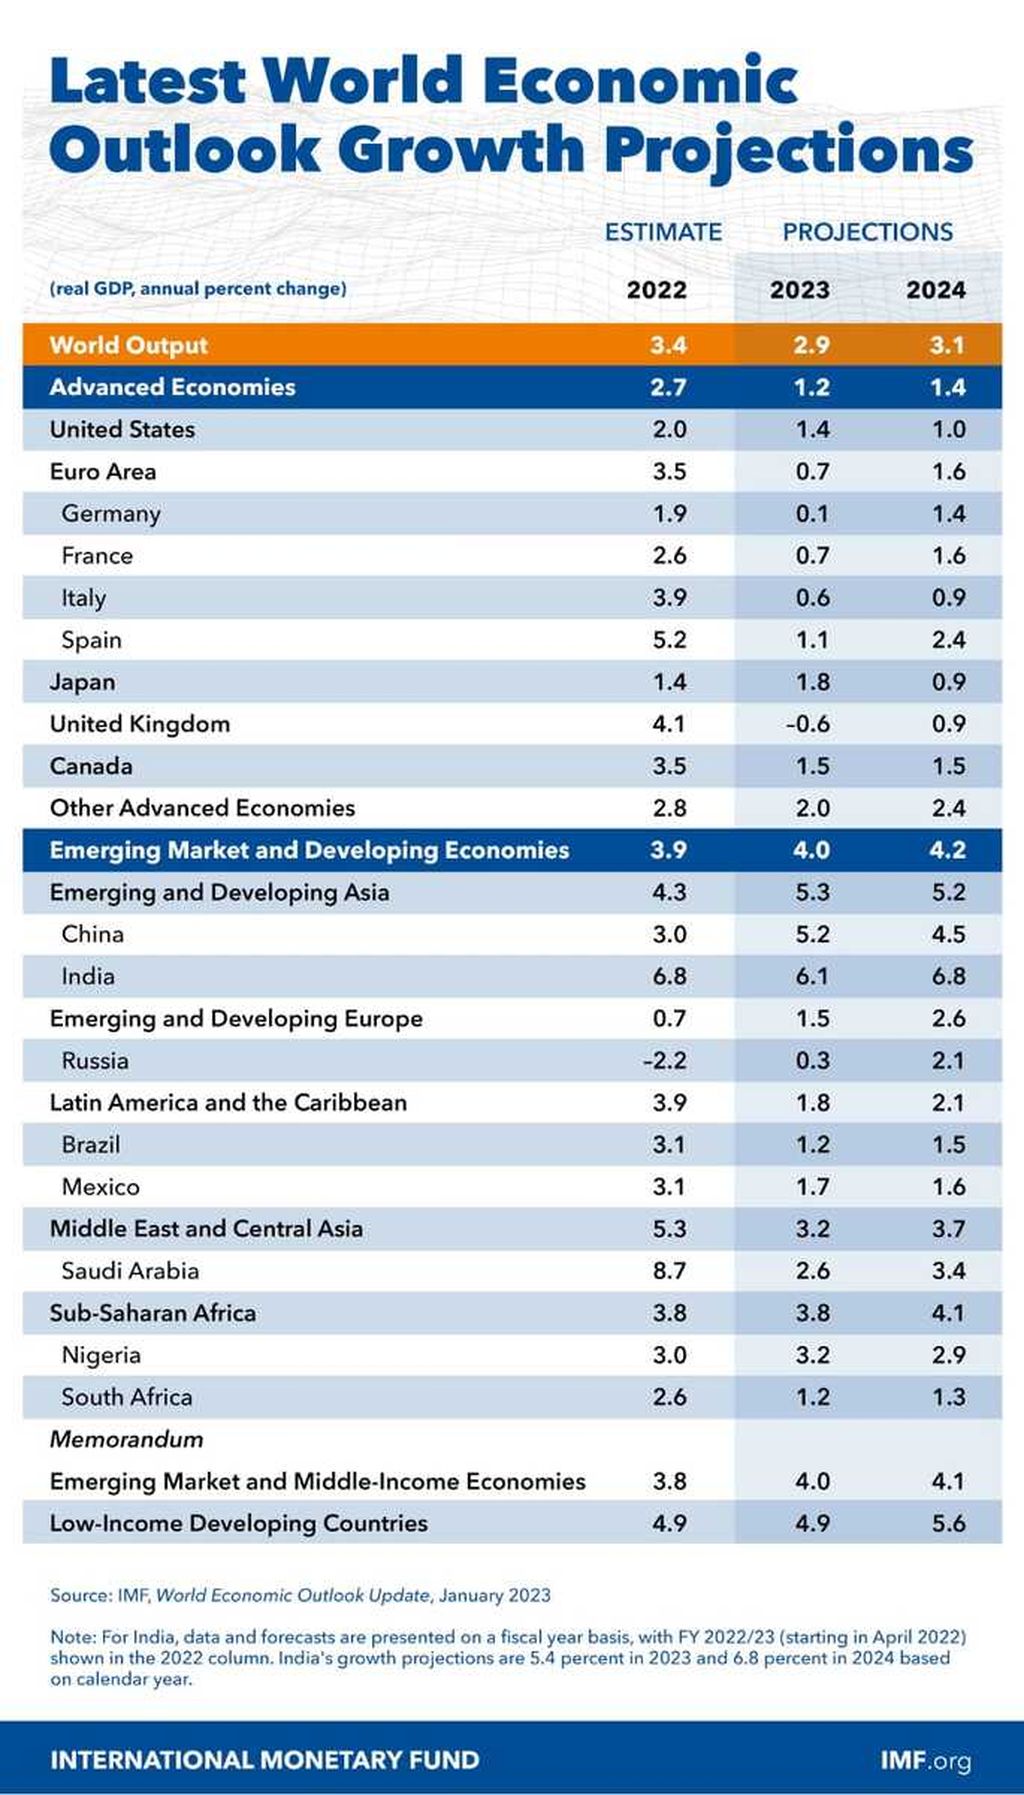 Pertumbuhan ekonomi dan proyeksi pertumbuhan ekonomi sejumlah negara dan kawasan yang diplublikasikan Dana Moneter Internasional (IMF) pada 30 Januari 2023.